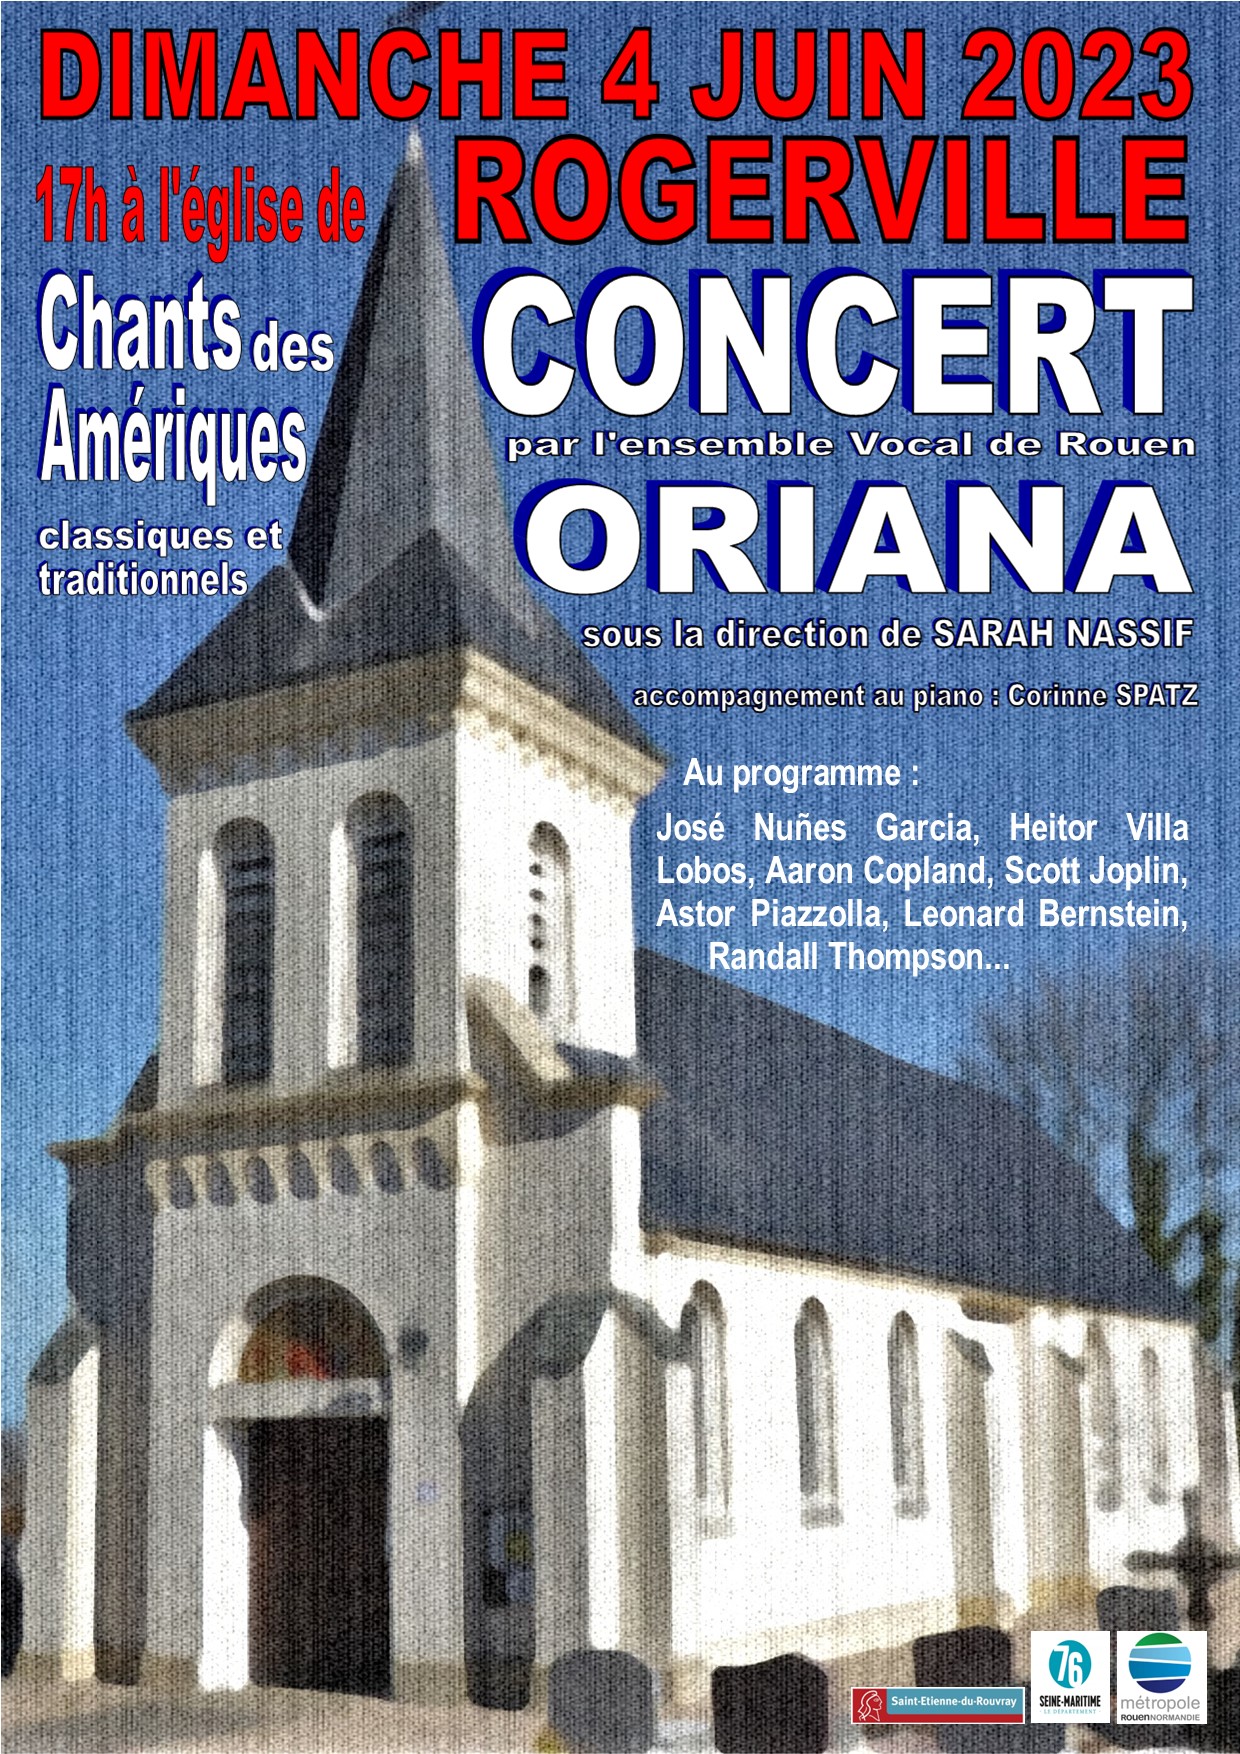 Affiche Rogerville concert Eglise 2023.jpg